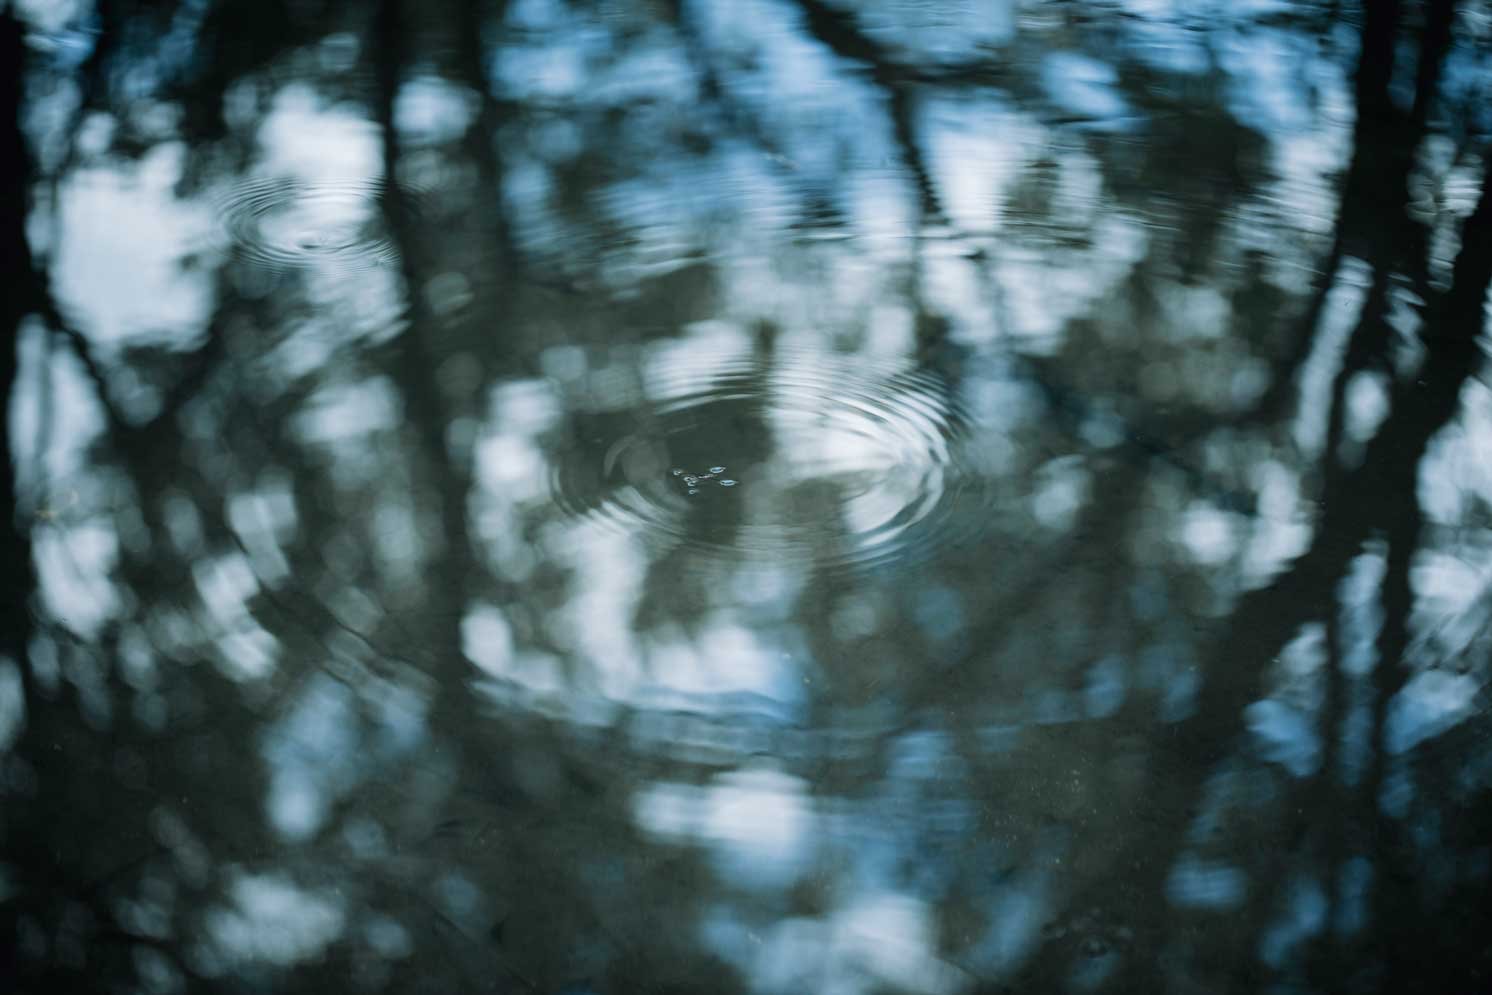 池にいるアメンボの写真 | Make New Magazine「未来の定番」をつくるために、パナソニックのリアルな姿を伝えるメディア